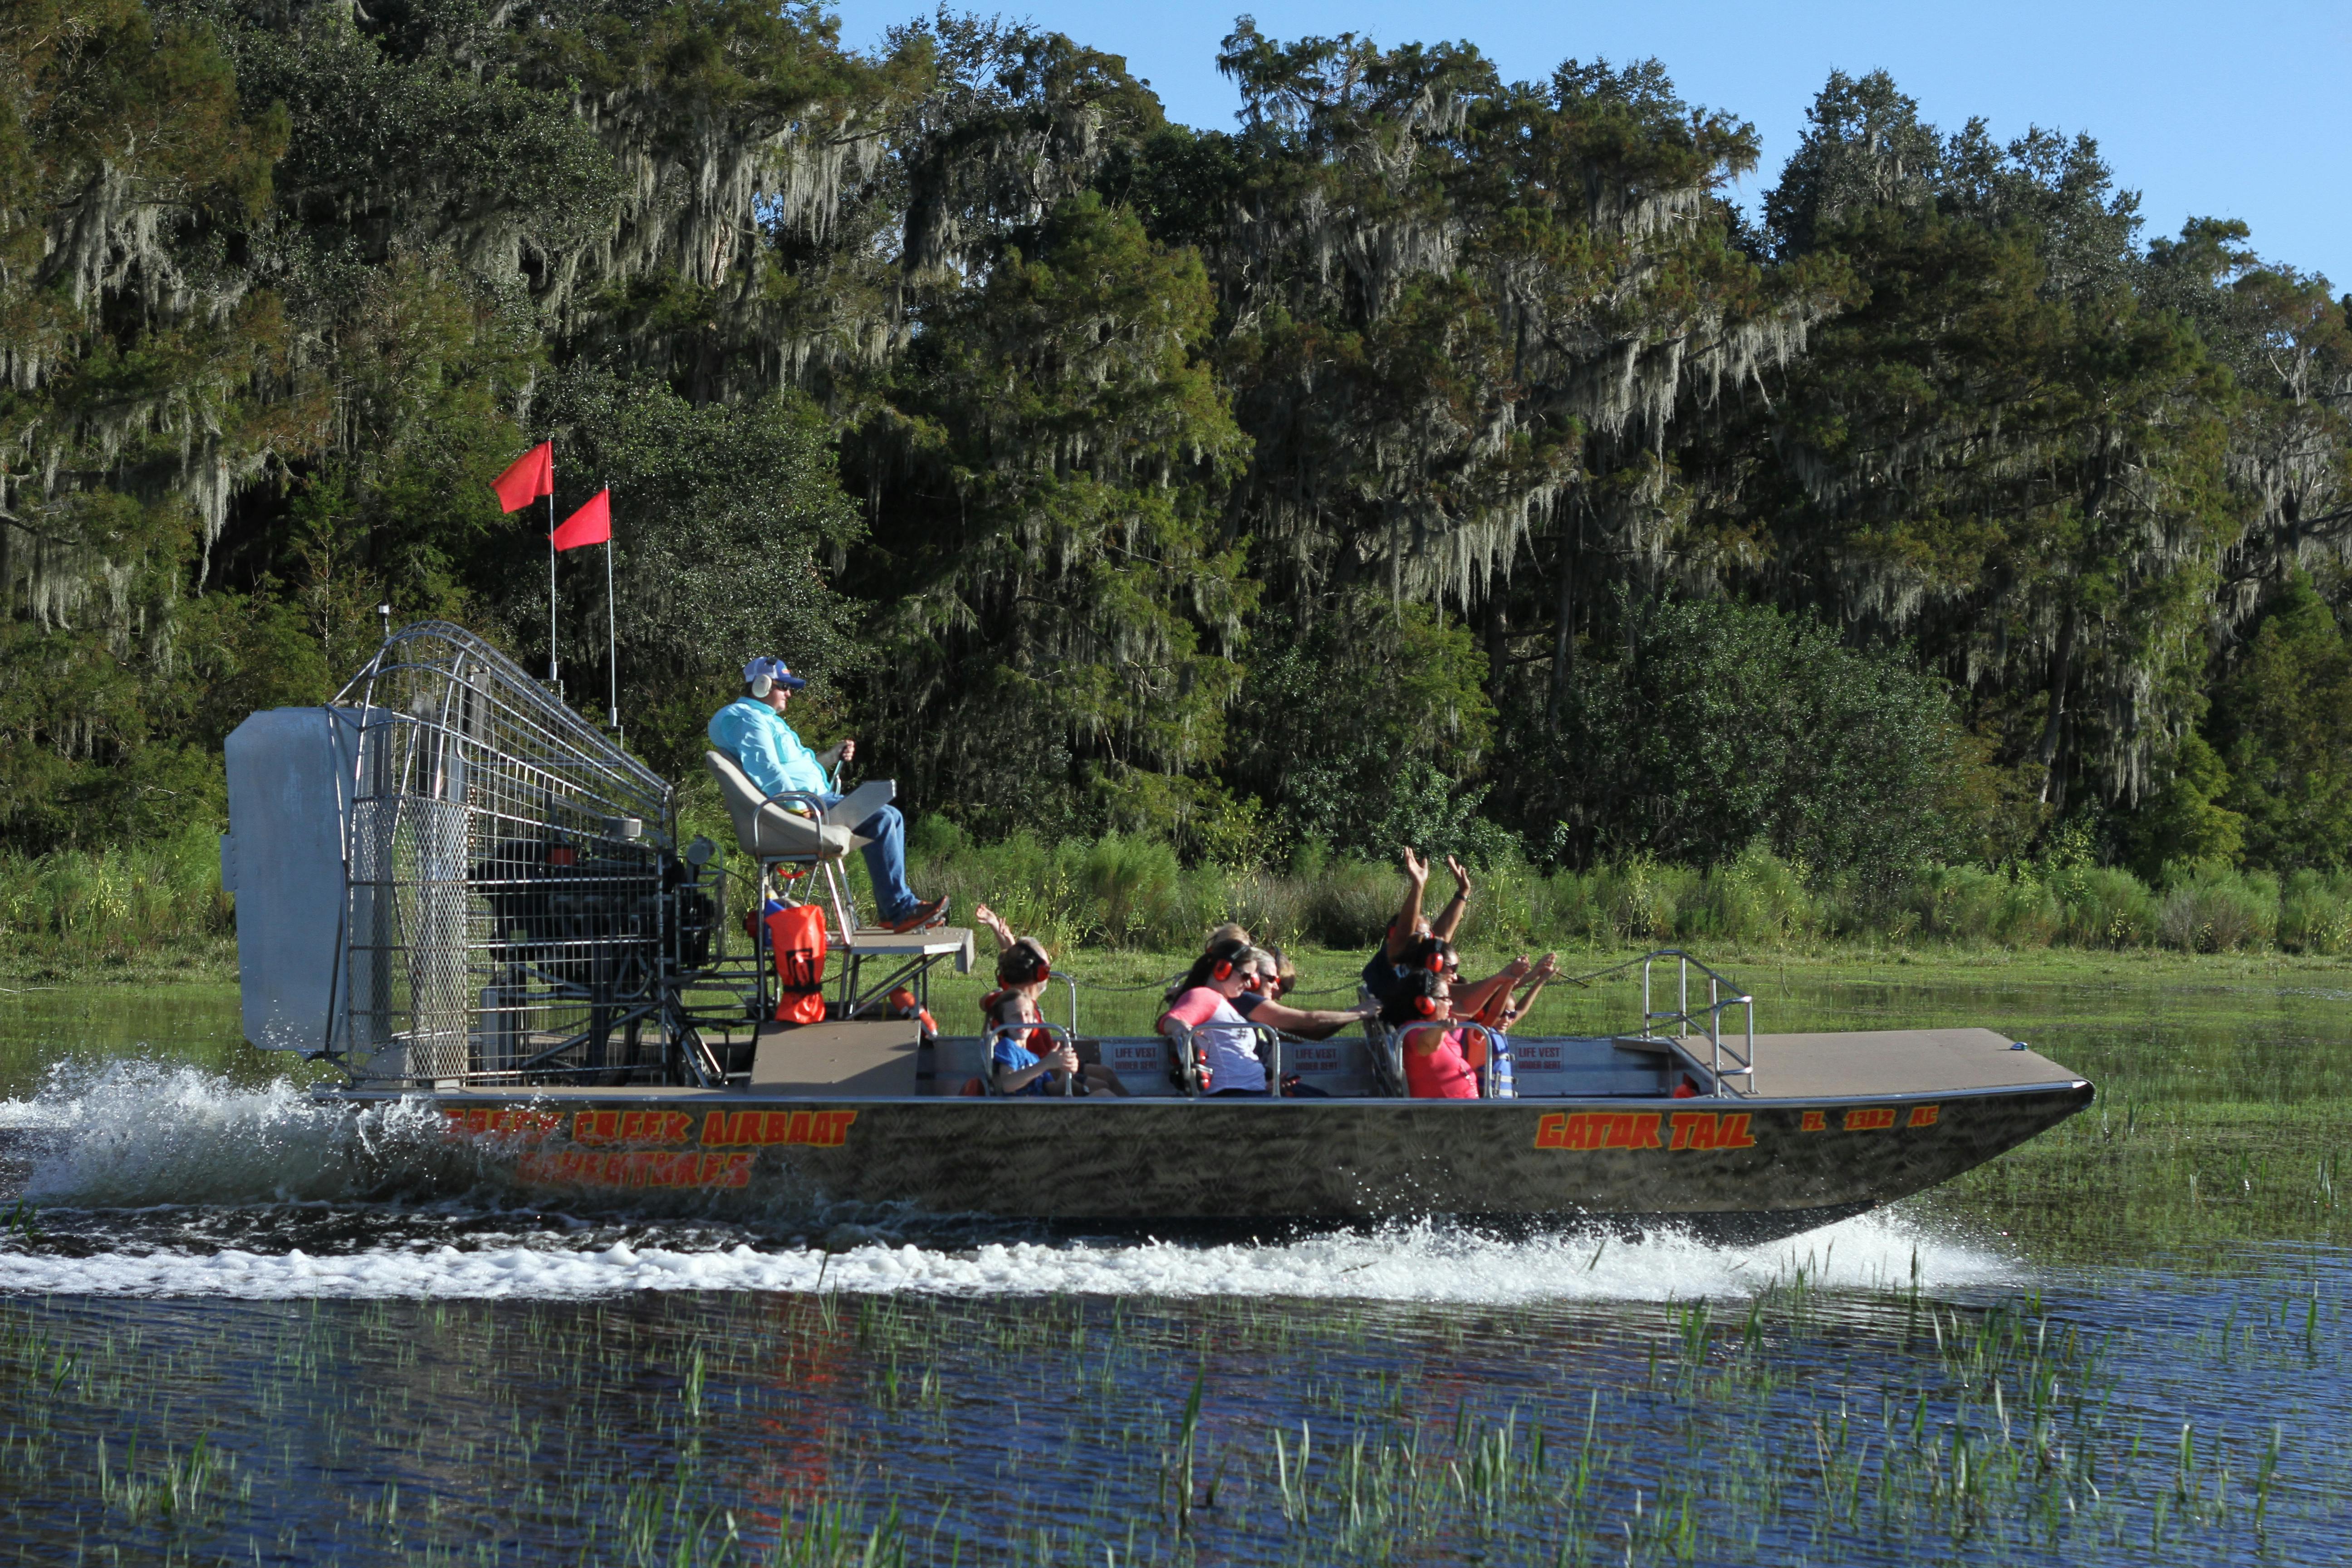 Einstündige Sumpfboot-Tour durch die Everglades in Zentralflorida mit Eintritt in den Park